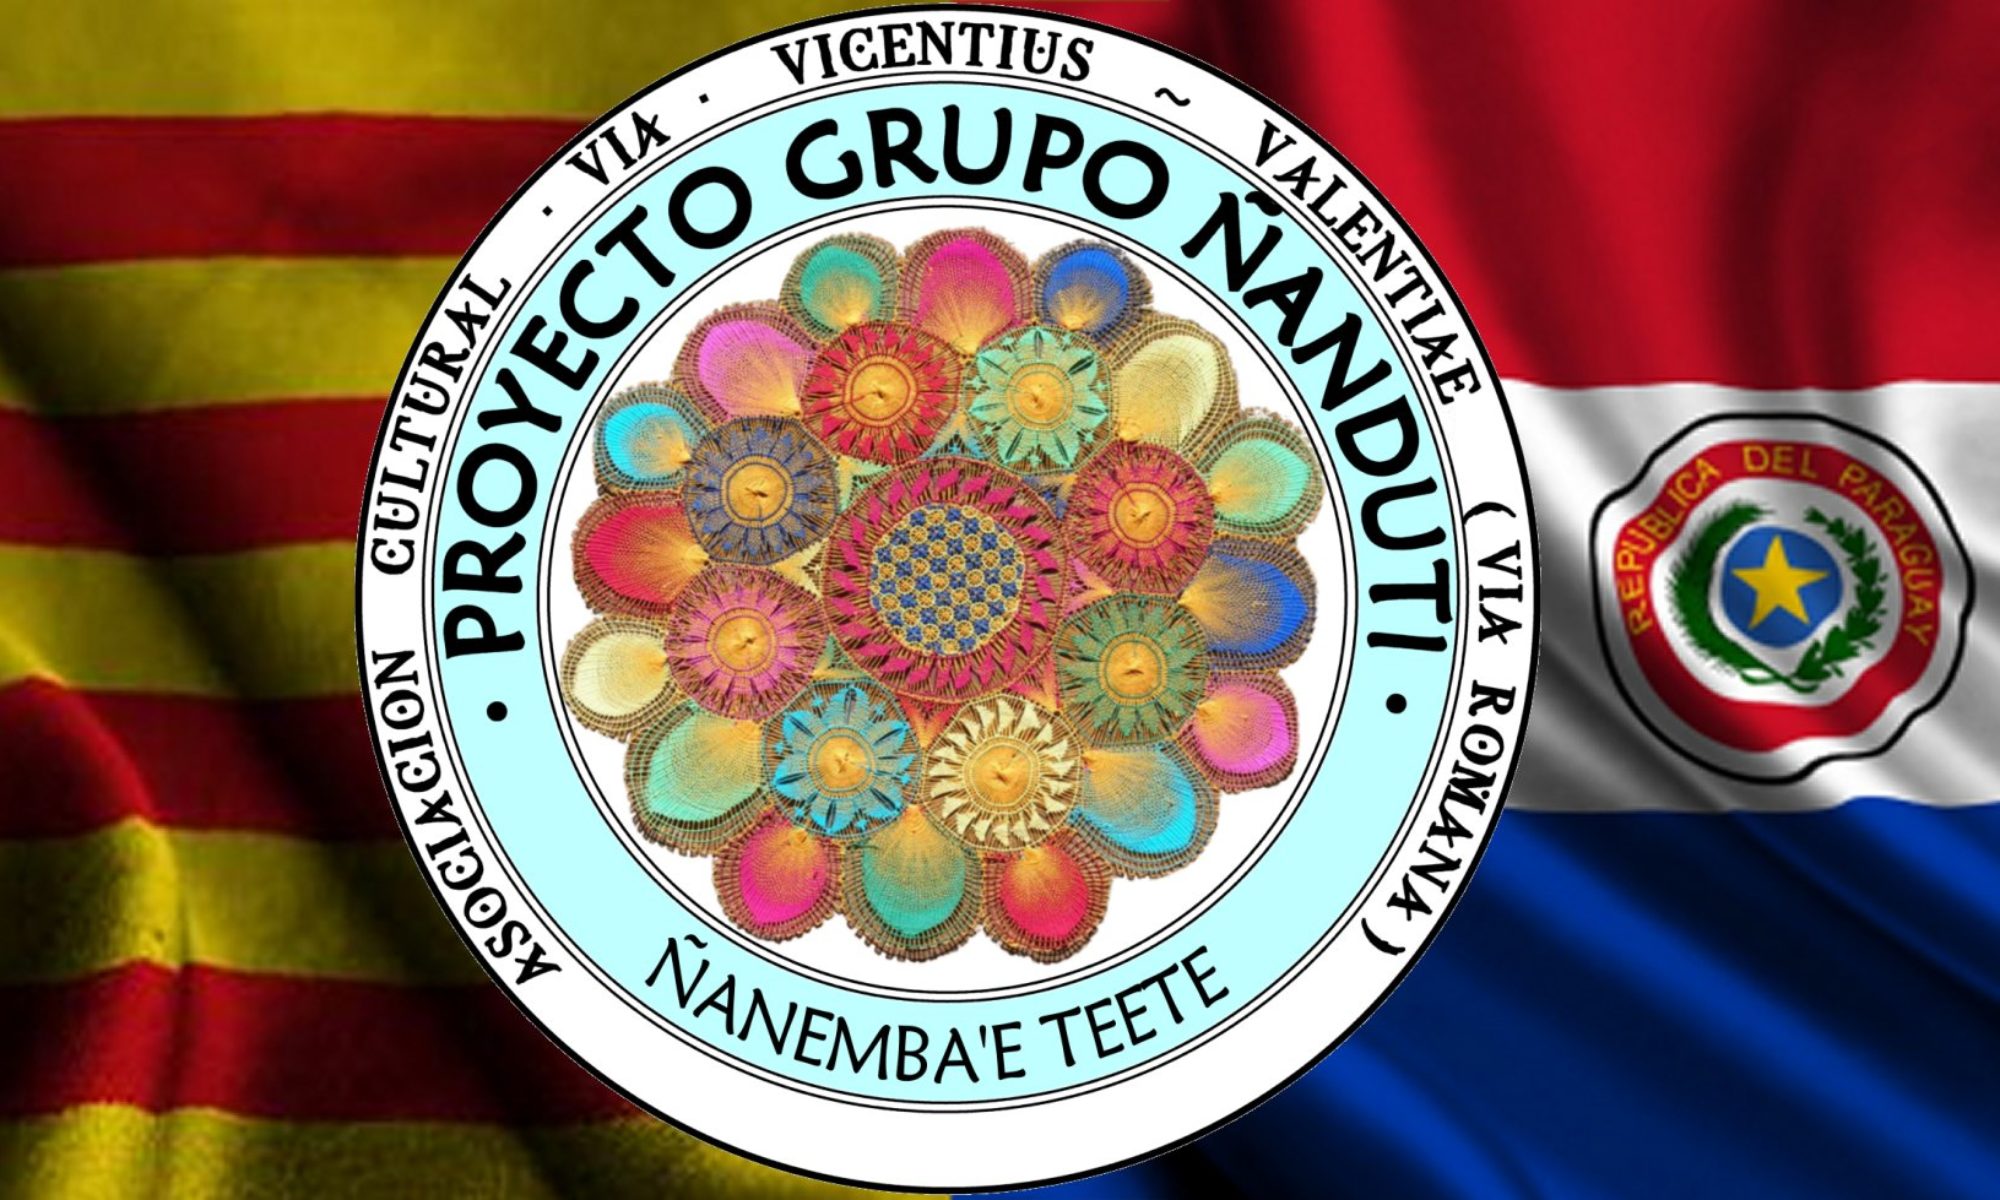 Proyecto Grupo Ñandutí - Ñanemba'é Teet'é